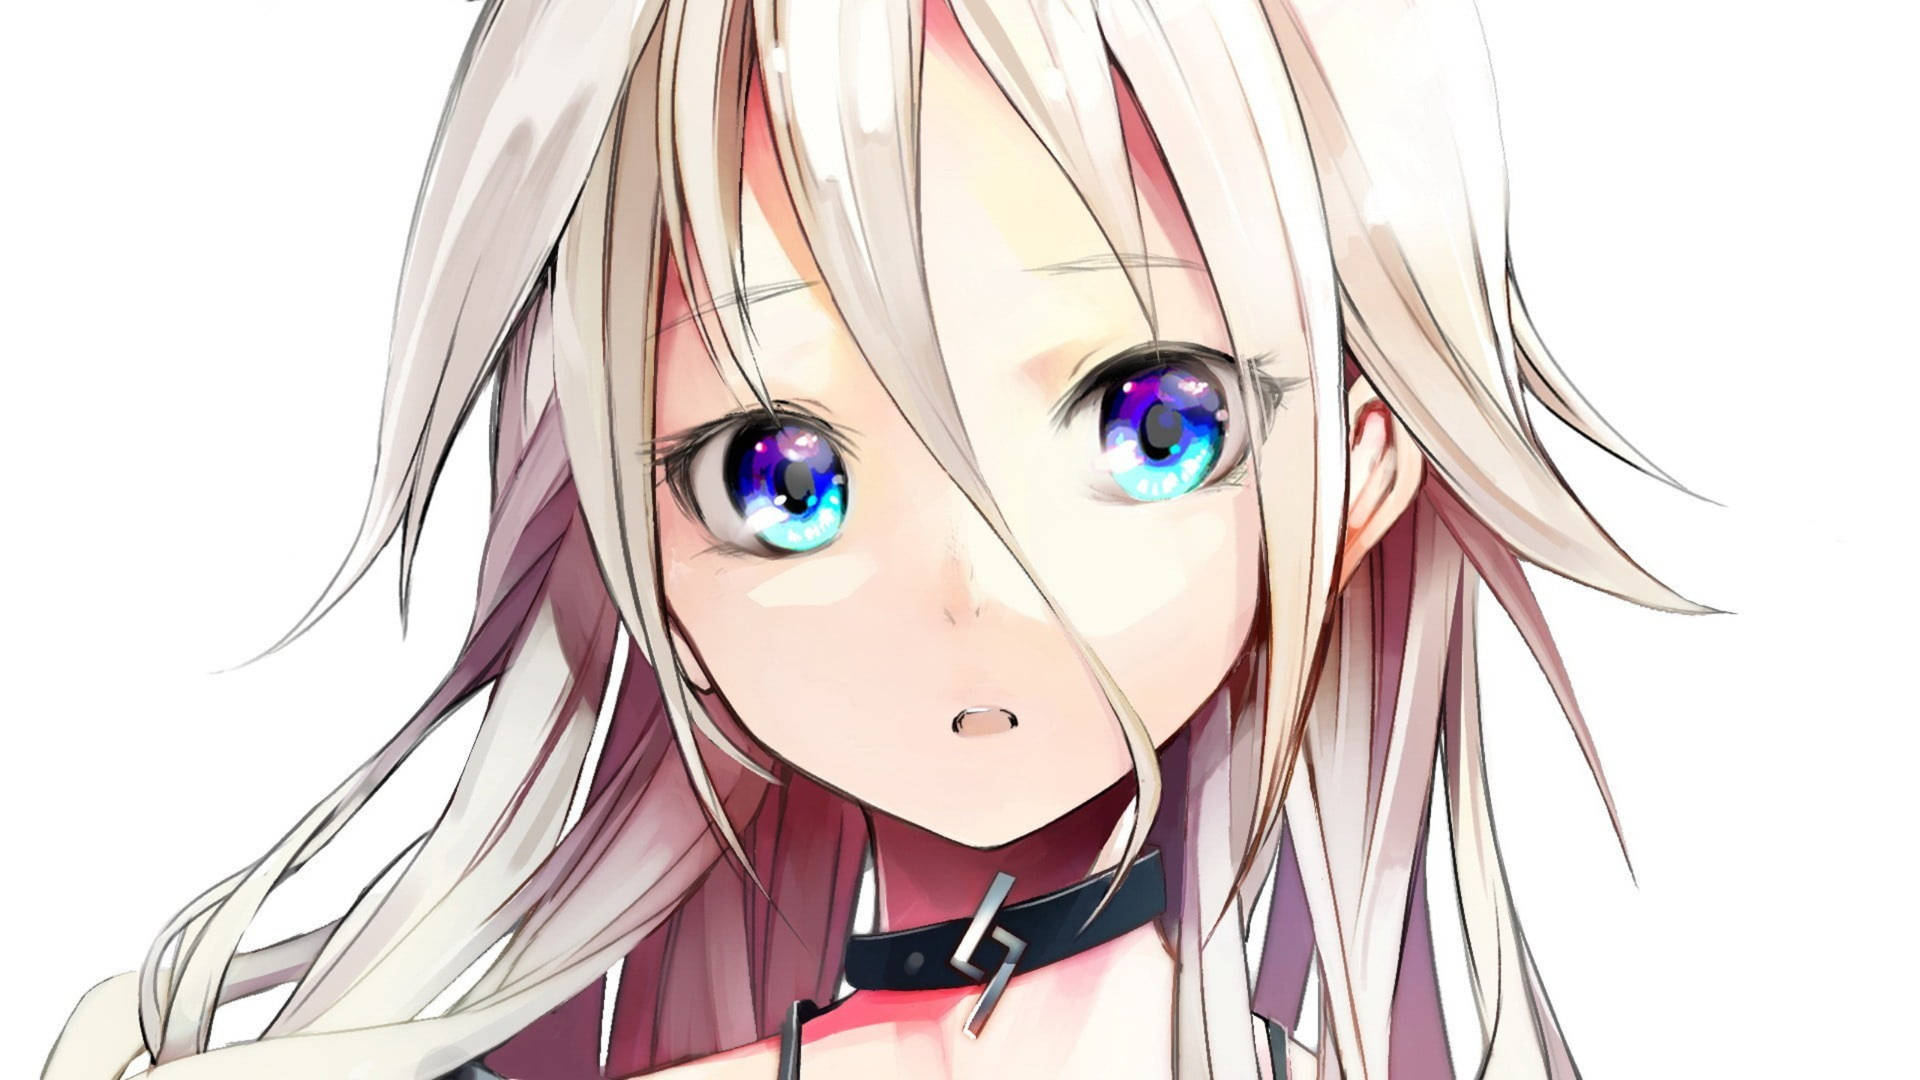 Melancholy Blue-eyed Anime Girl Background